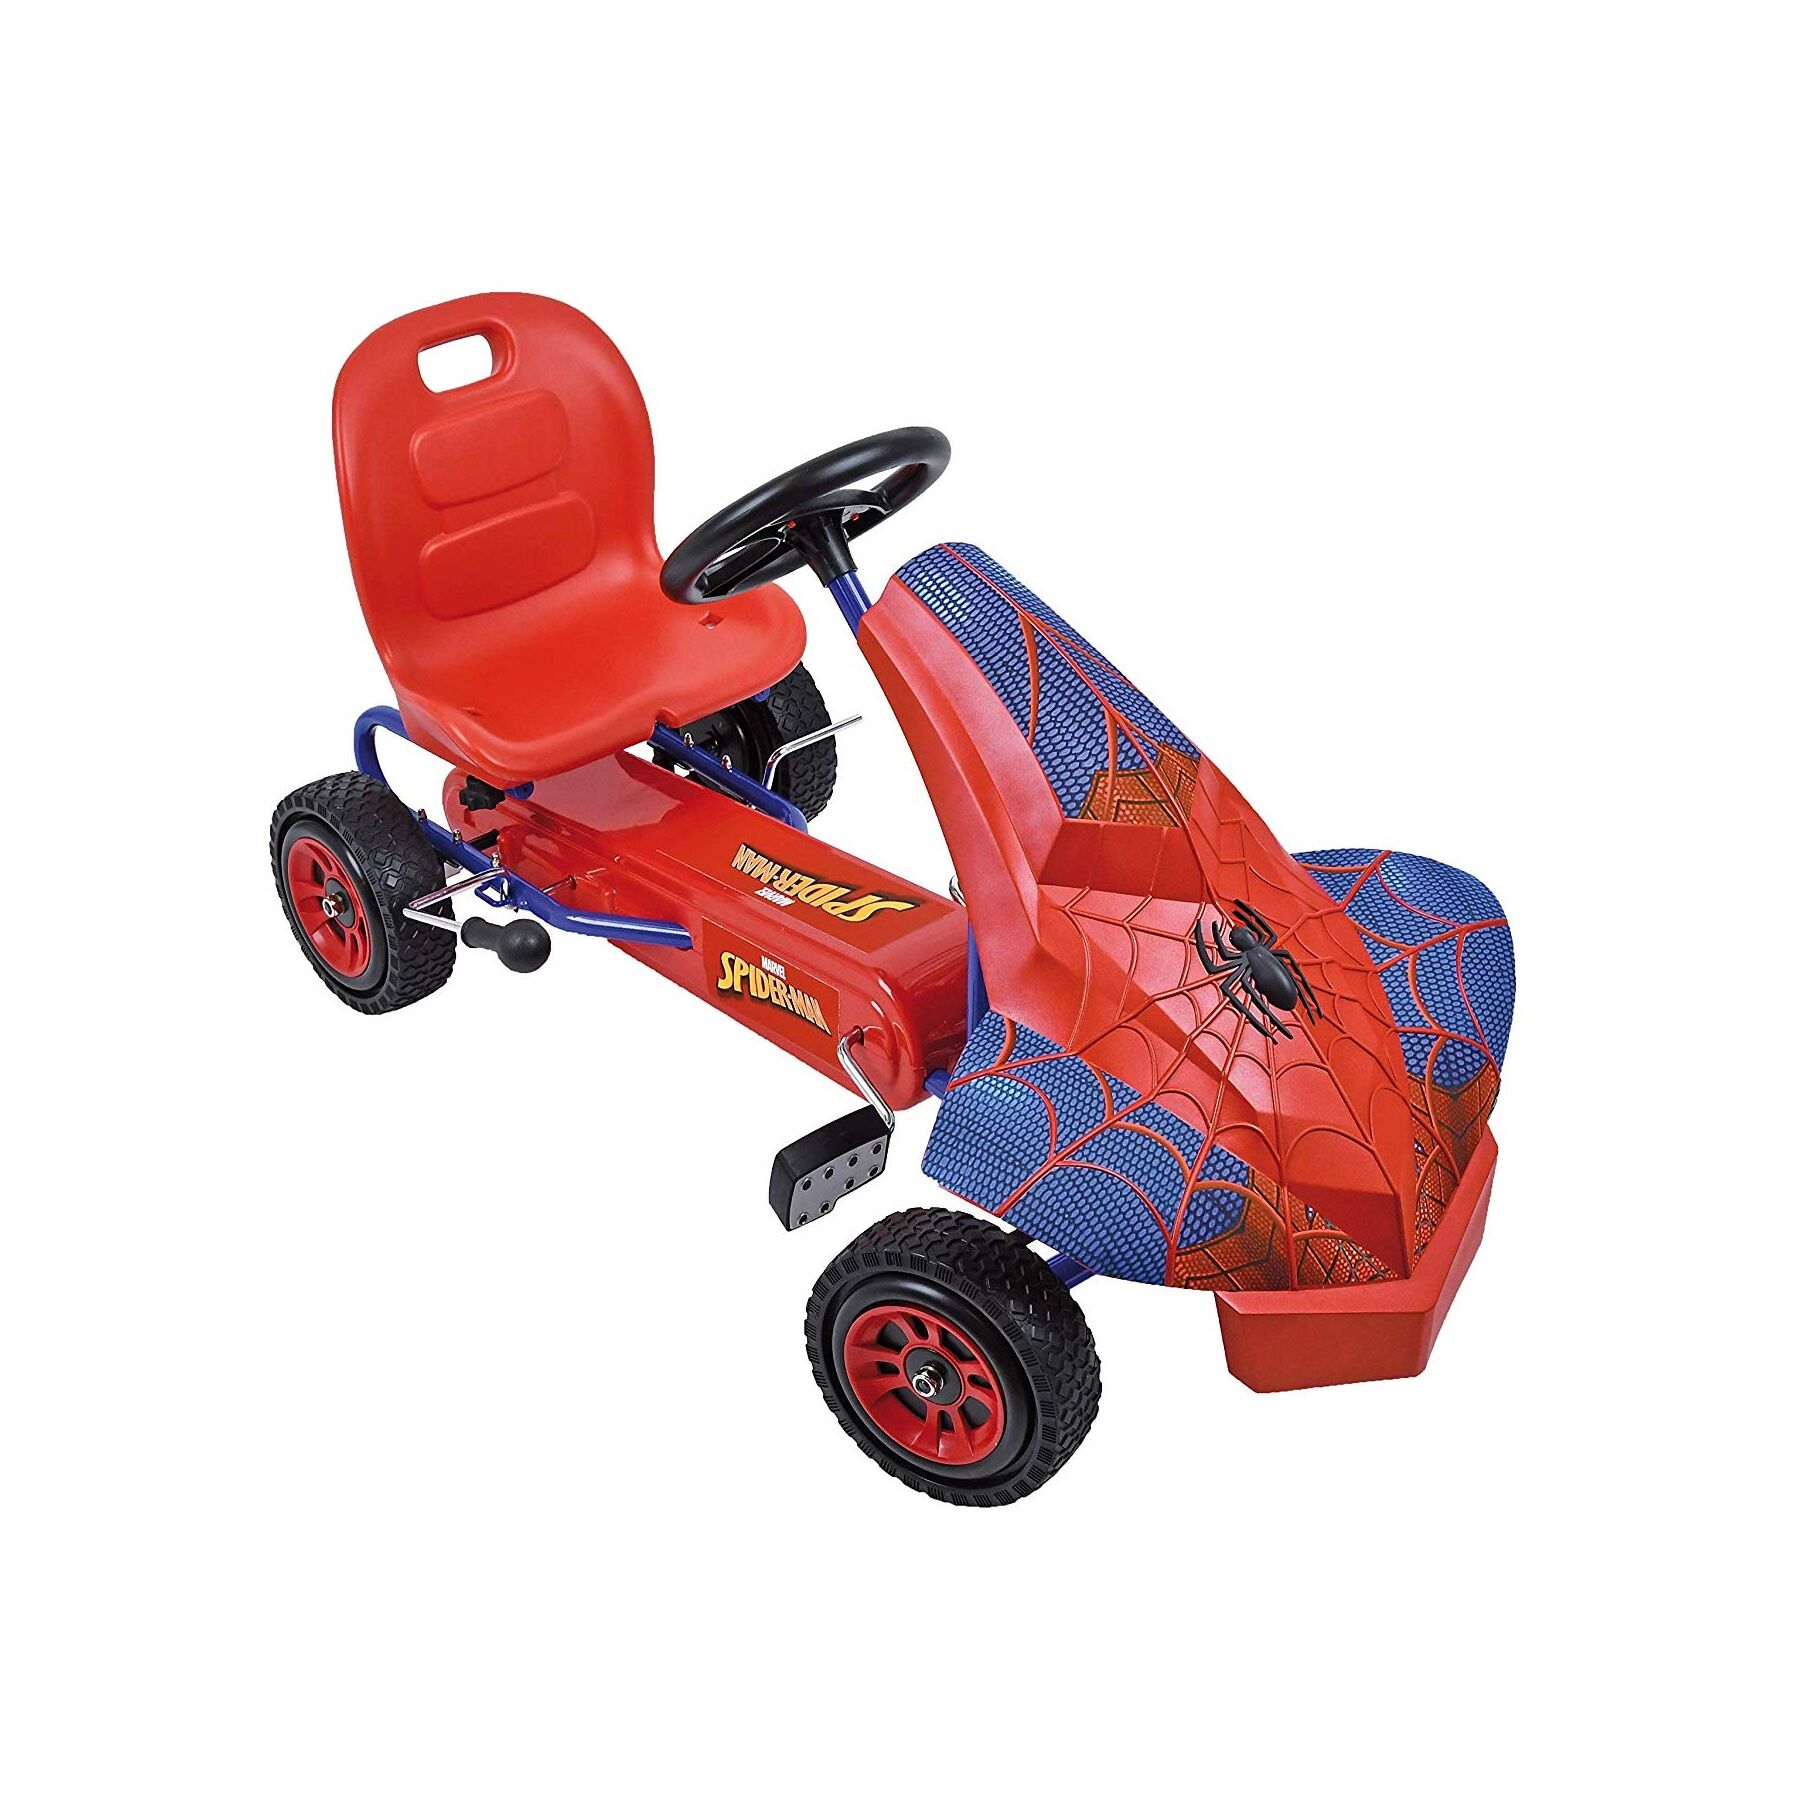 Hauck Go-Kart Roues Profil en Caoutchouc Bleu/Rouge Karting à Pédale pour Enfants avec Carrosserie Marvel Spiderman Voiture à Pédales à une Vitesse Siège Réglable Frein à Main 